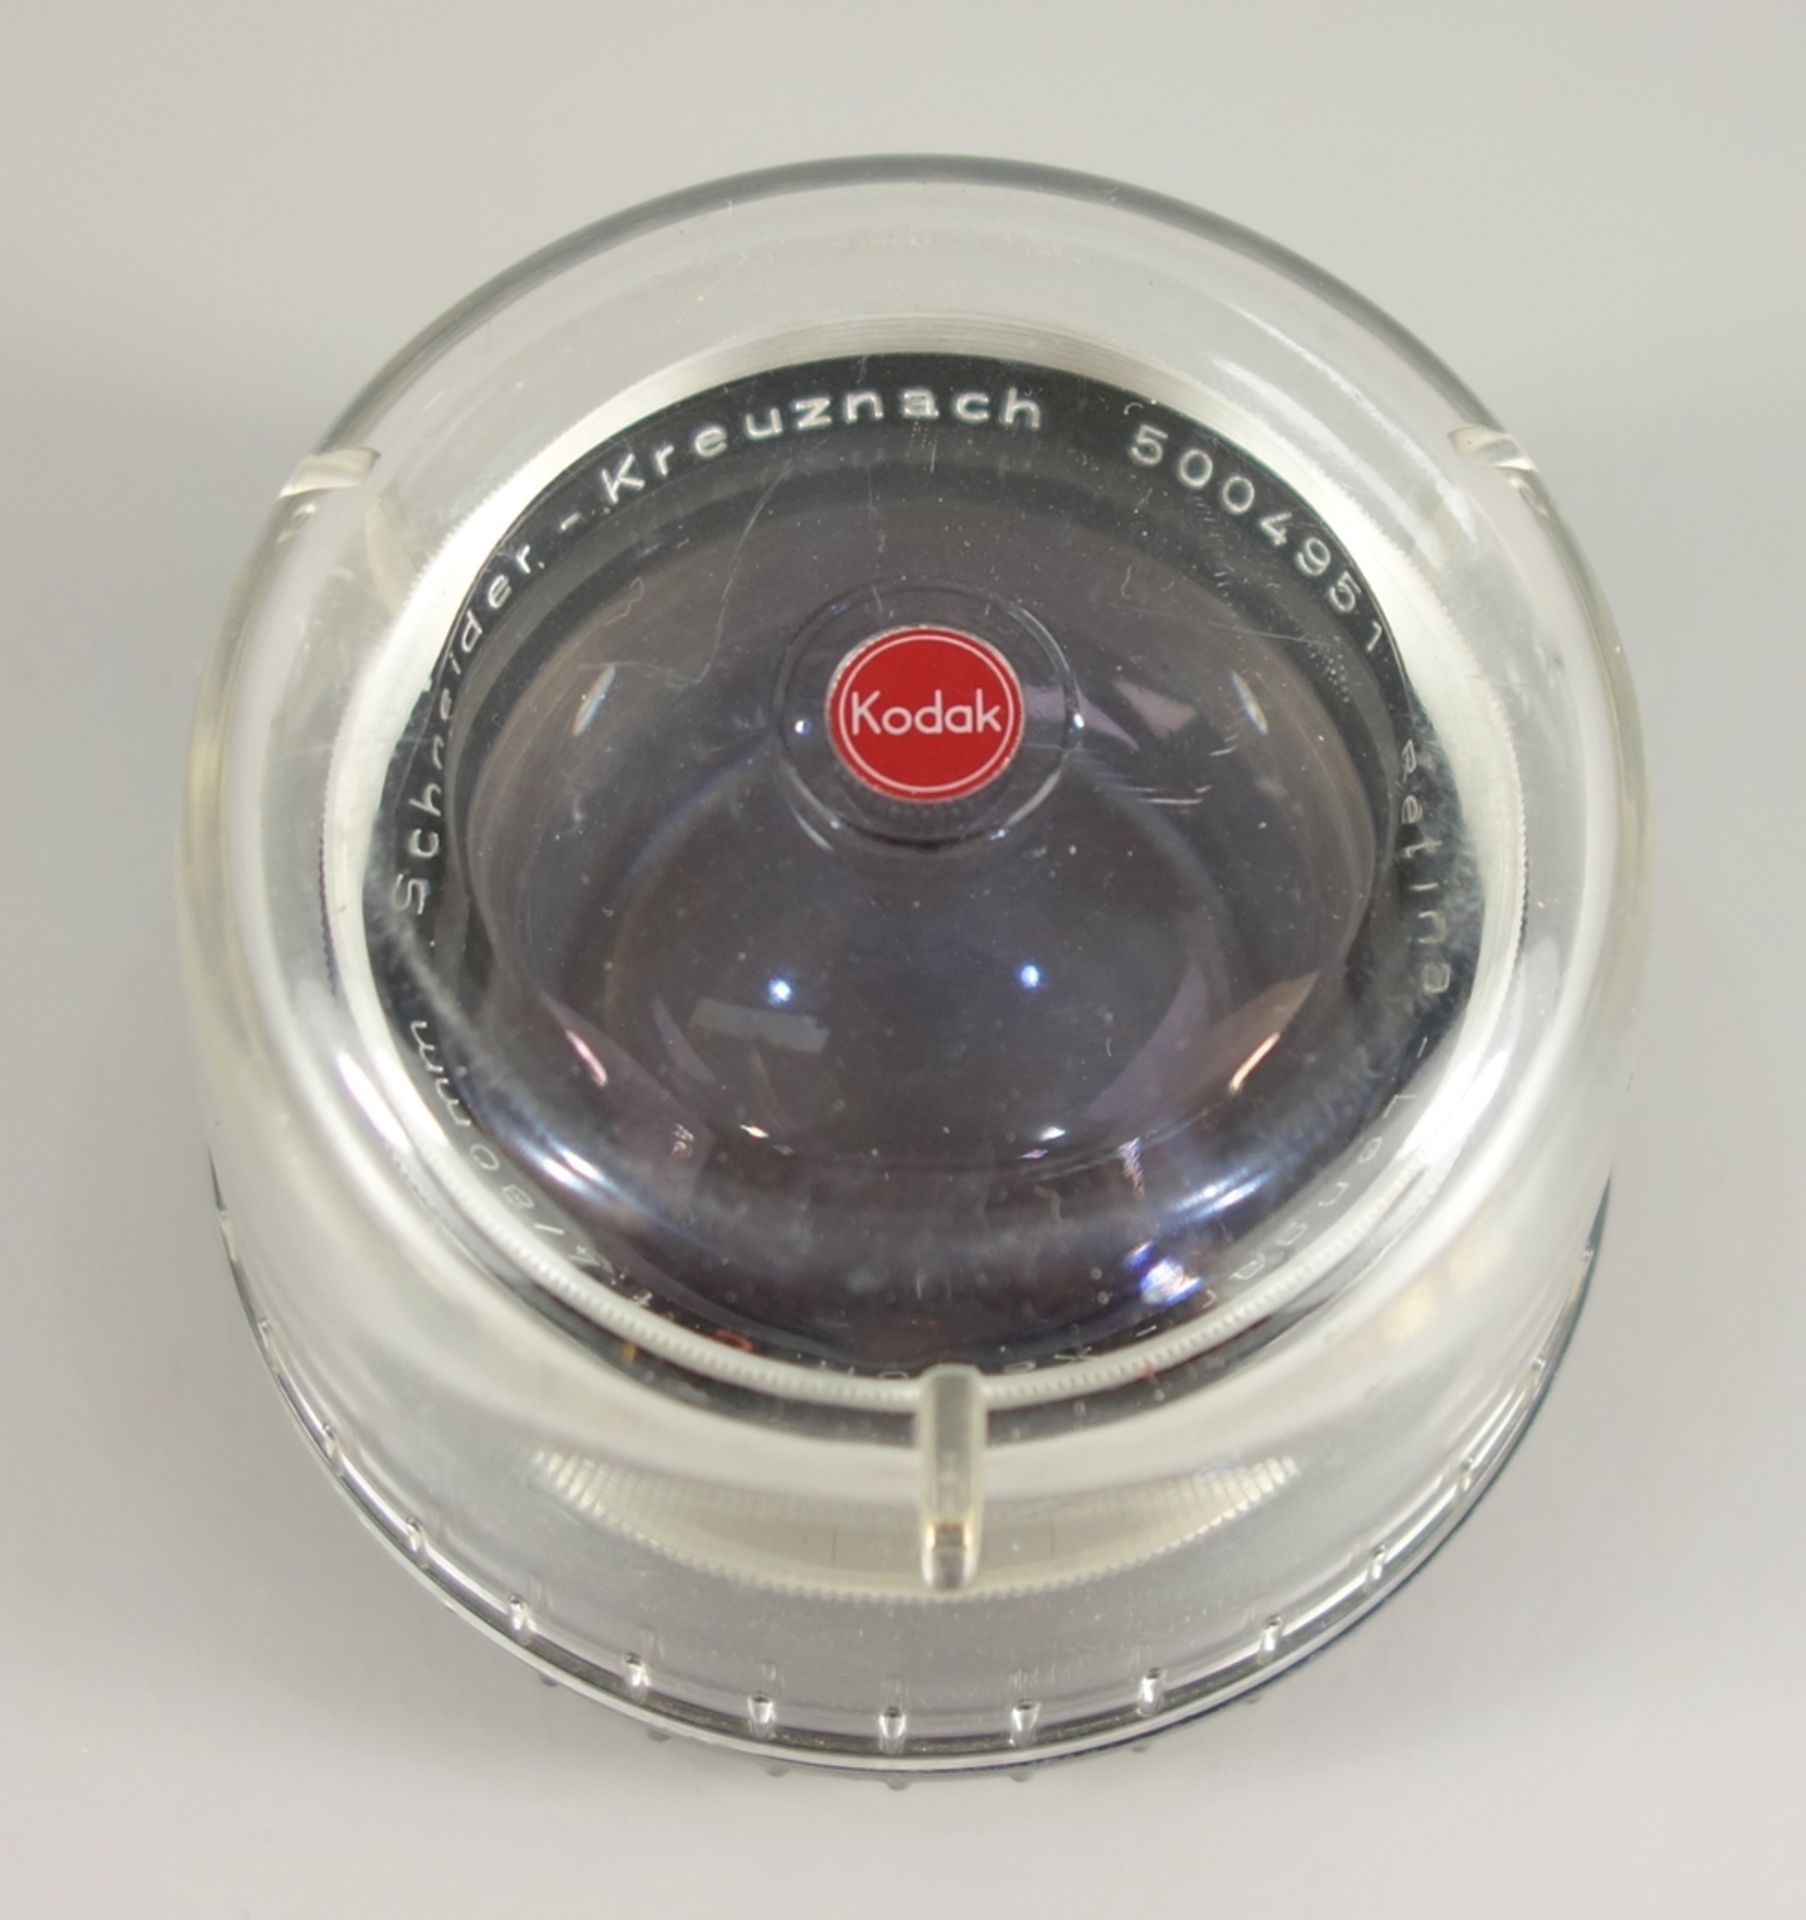 Tele-Objektiv für Kodak Retina, Schneider-Kreuznach Retina Longar-Xenon C 1:4/80 mm, 1954-60, - Bild 3 aus 4